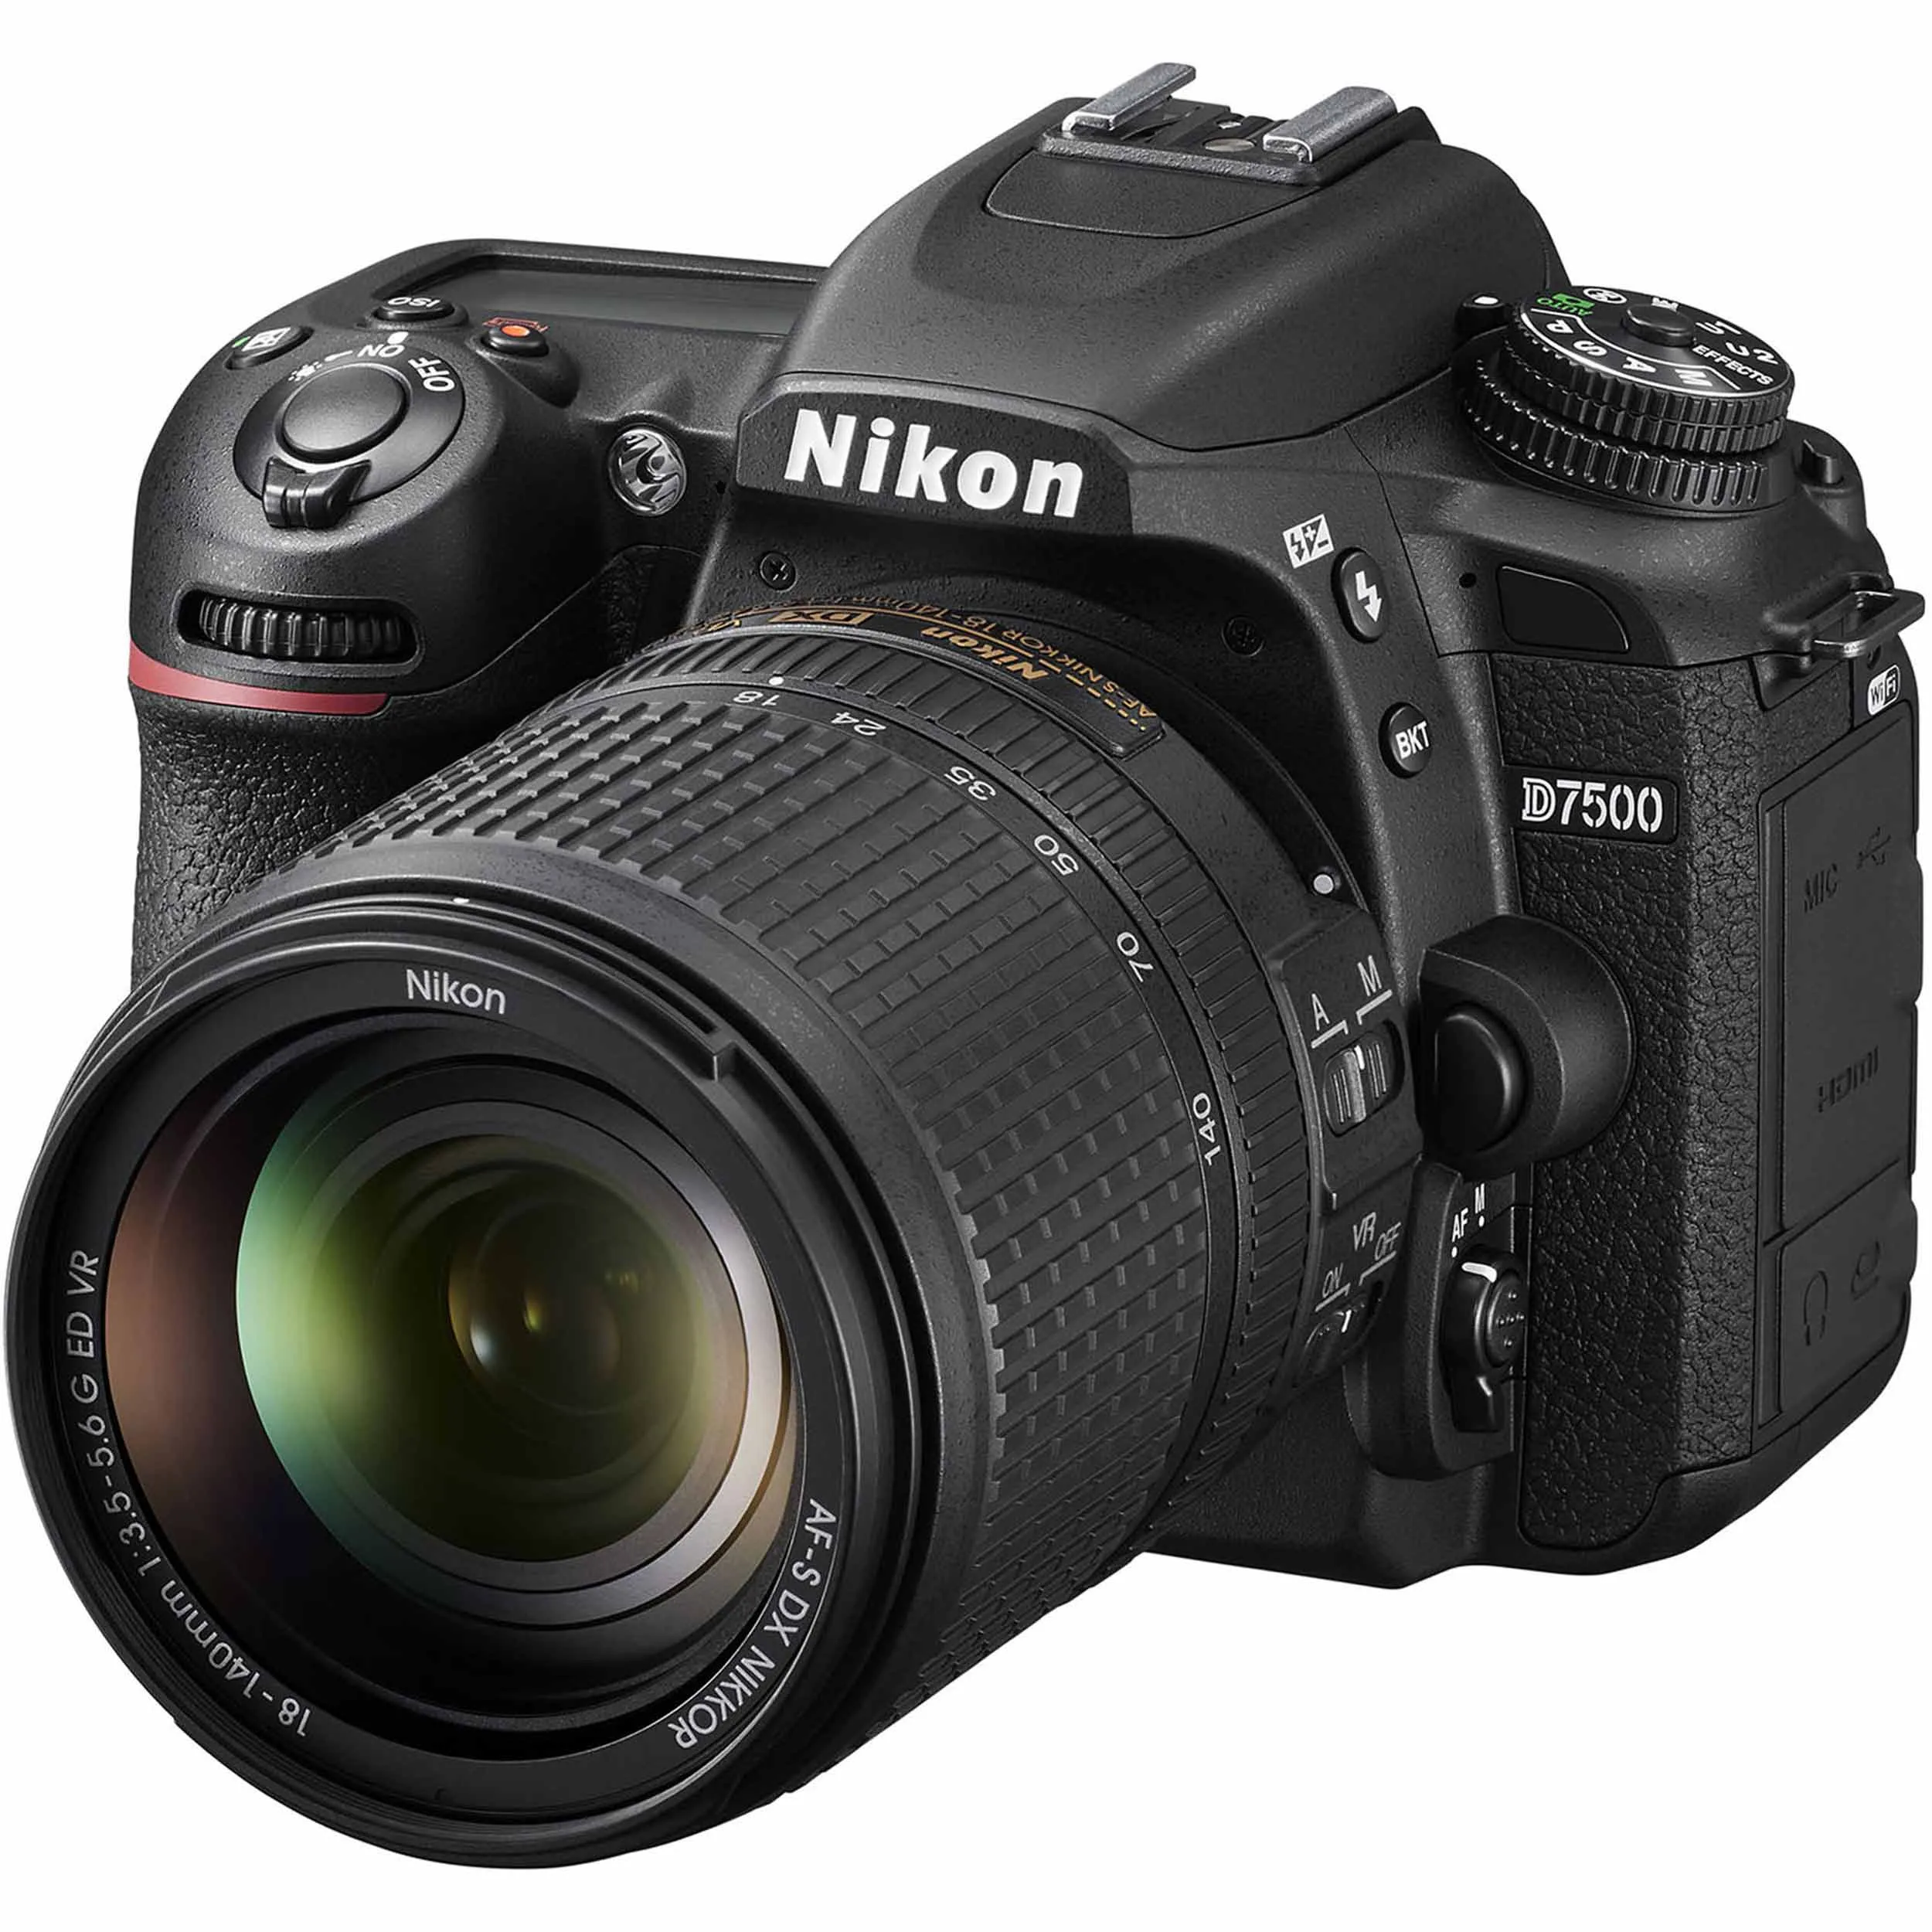 גוף מצלמה Nikon D7500 עם עדשה 18-140 מ"מ 5